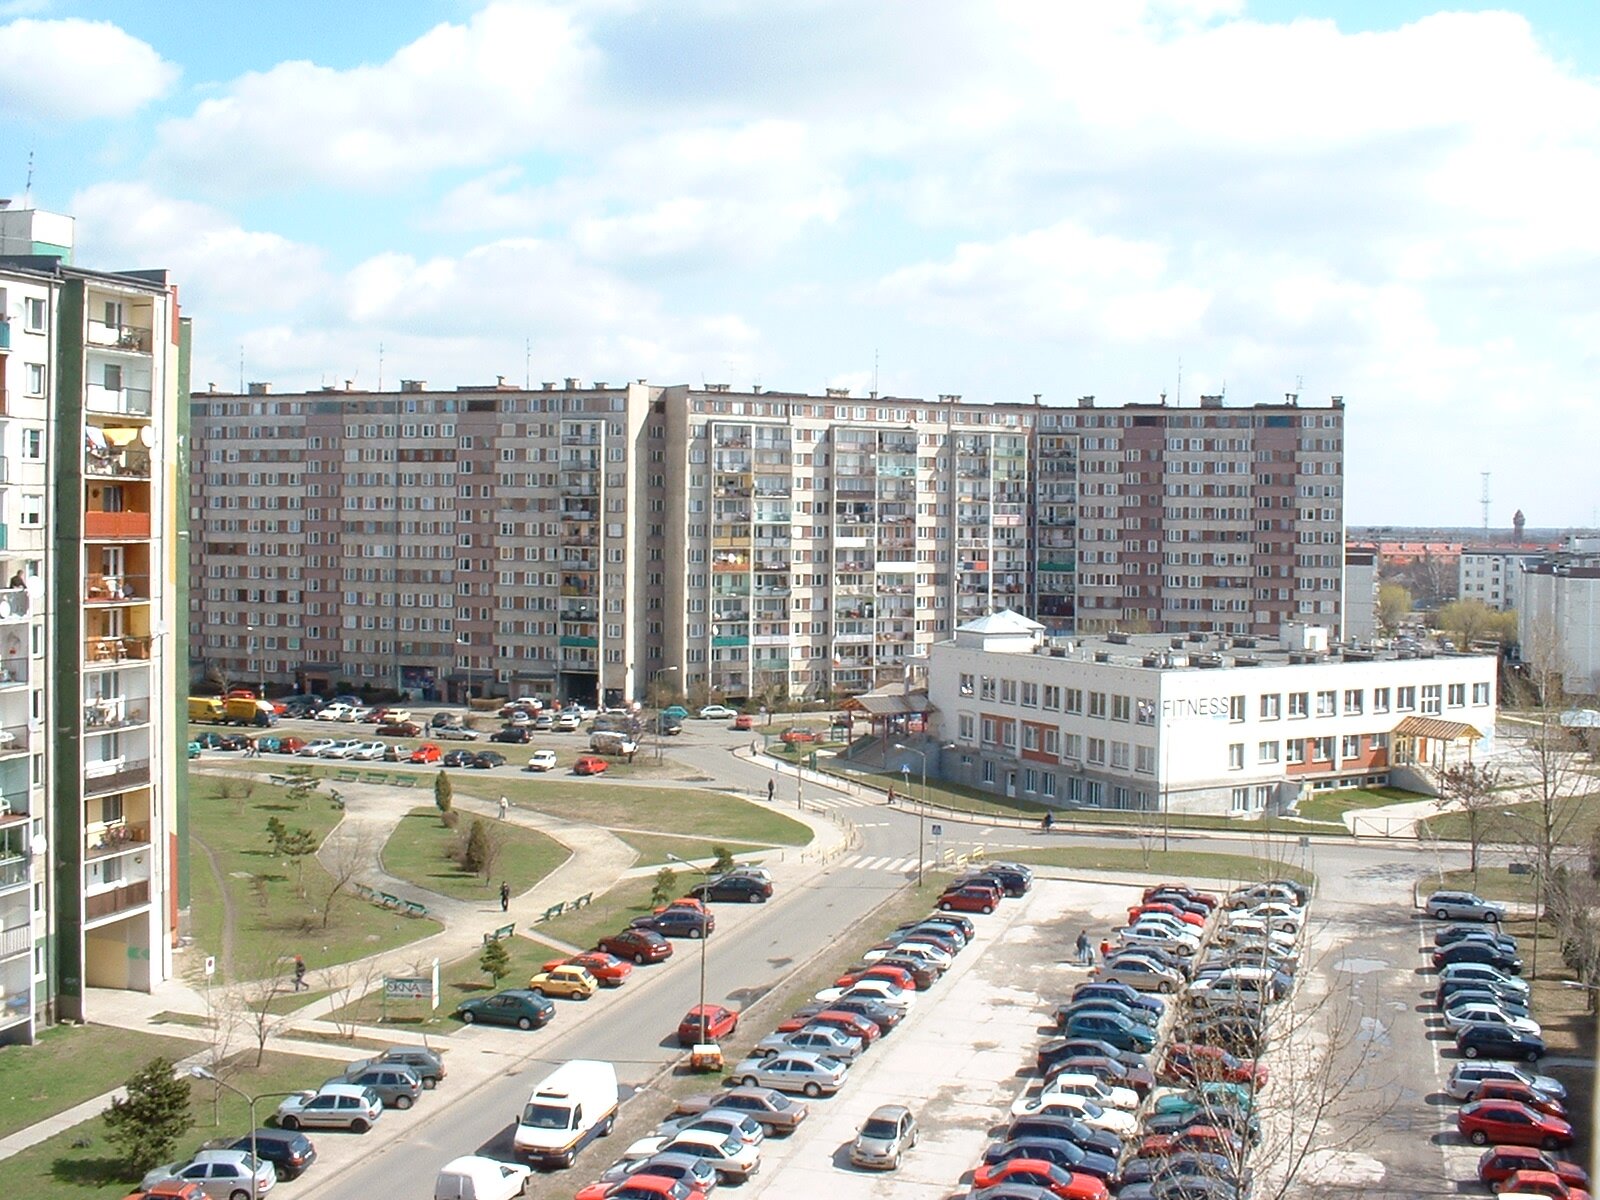 Zdjęcie przedstawia parking i samochody. Wokół parkingu stoją wieżowce i dwupiętrowy budynek użyteczności publicznej. 